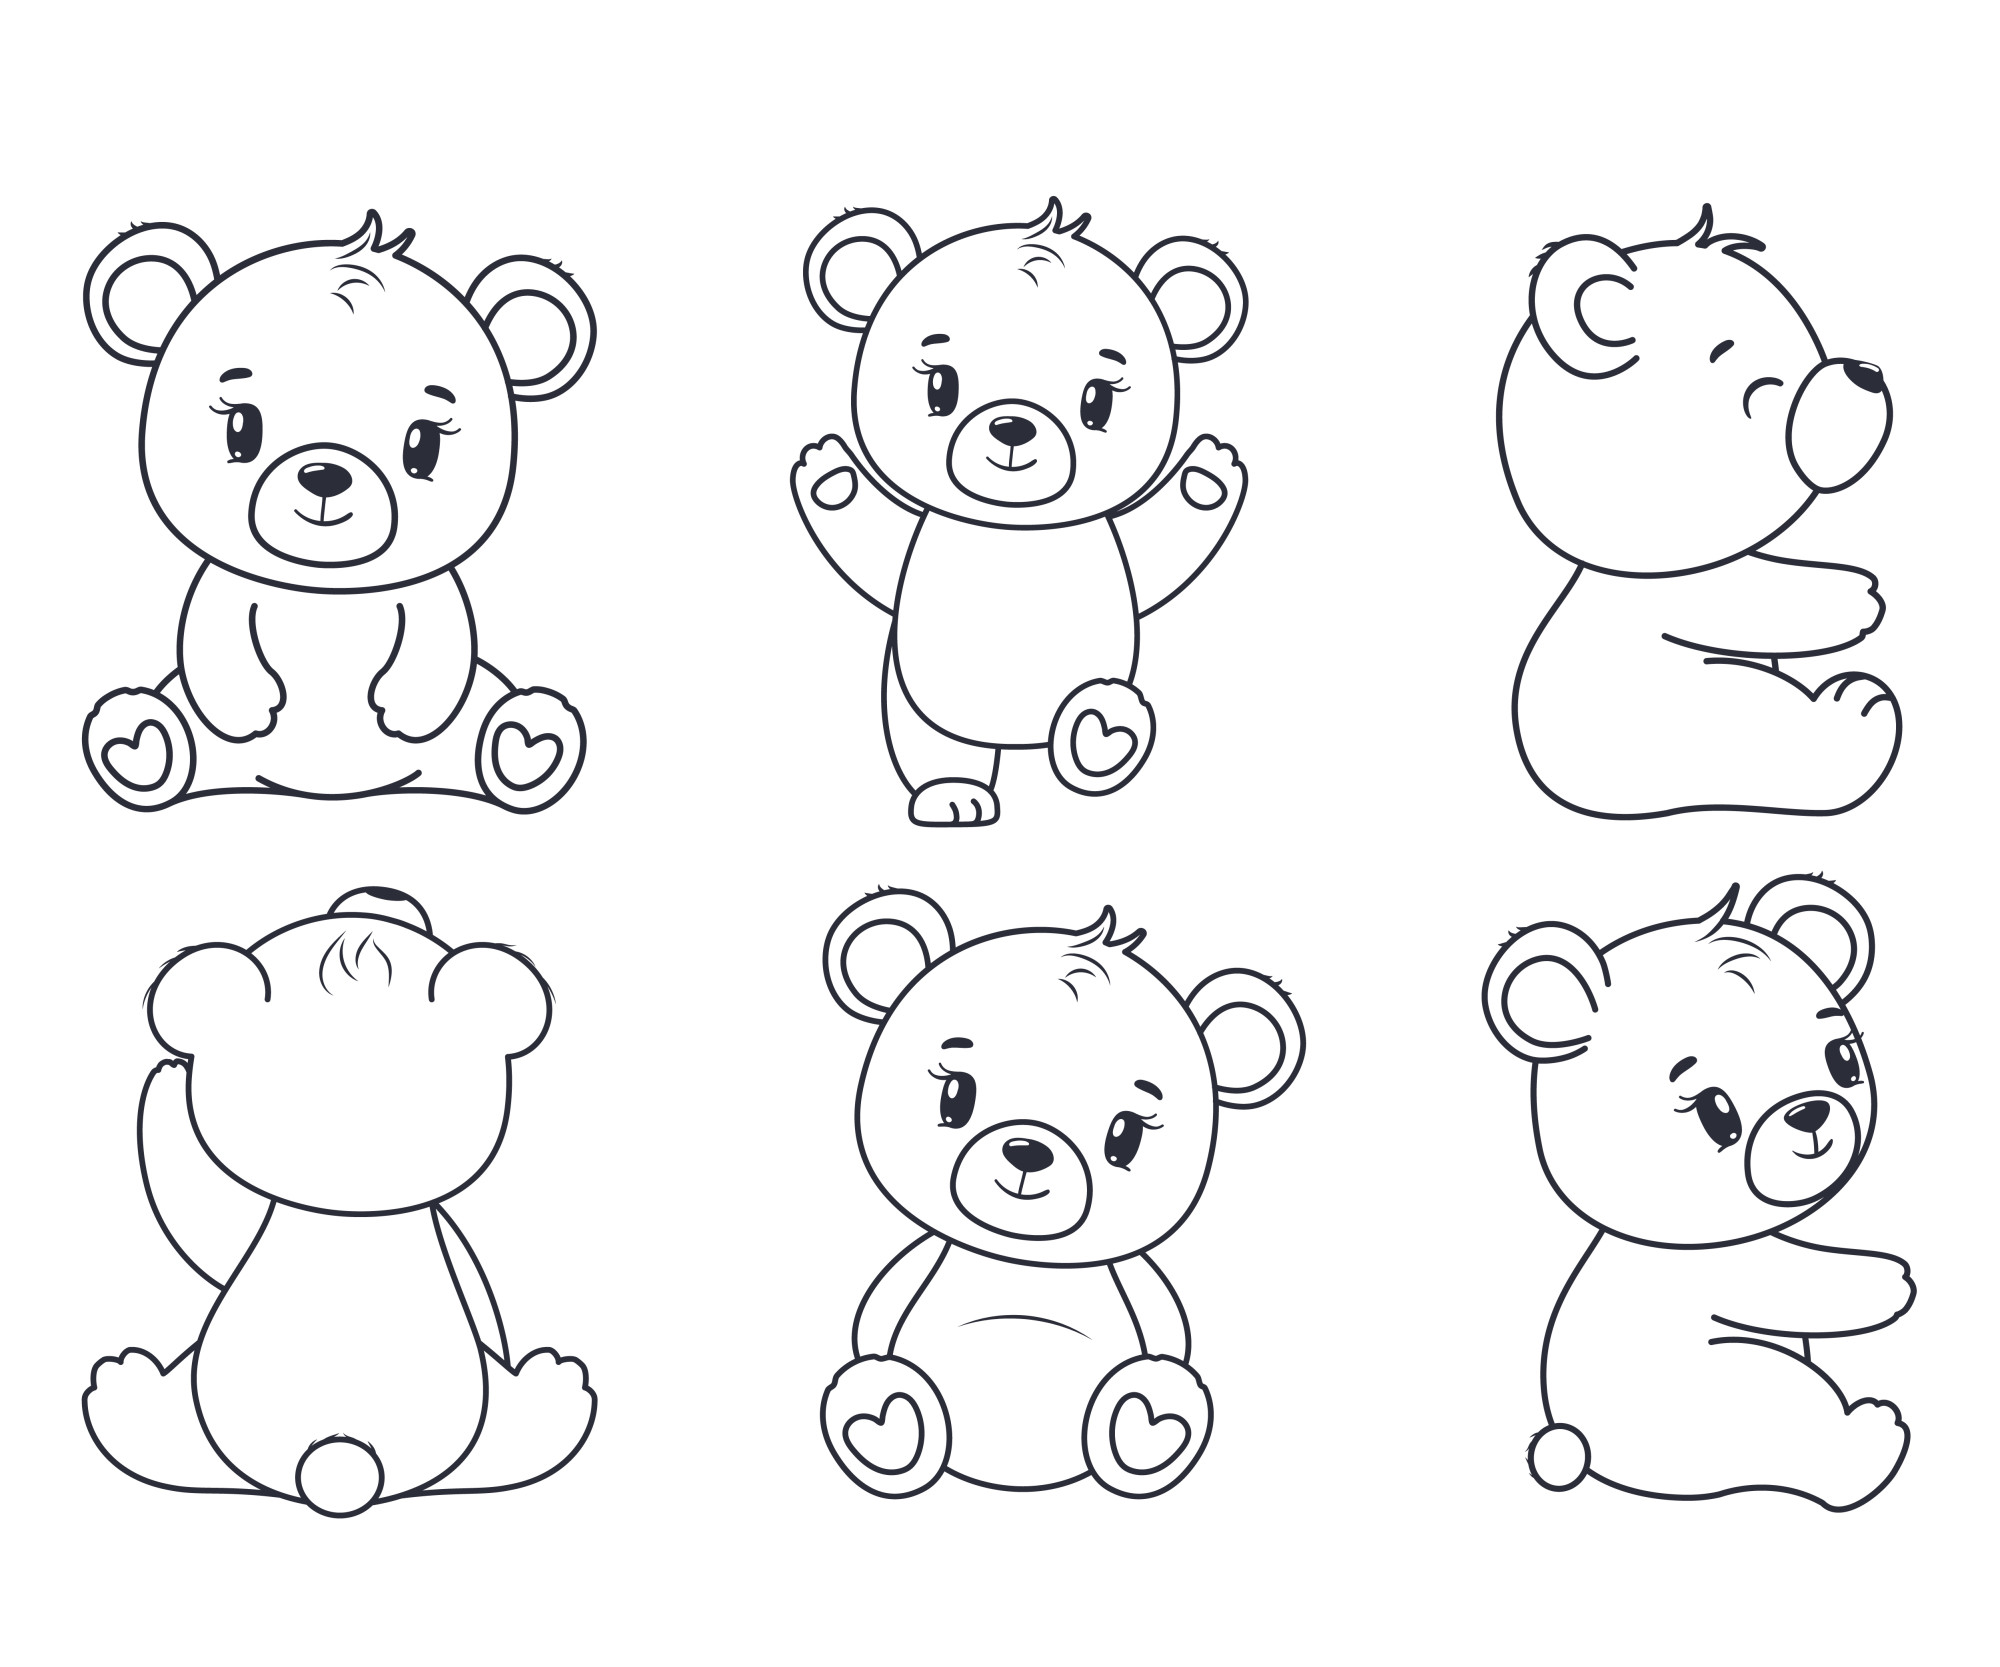 Раскраска для детей: набор мультяшных медвежат в разных позах